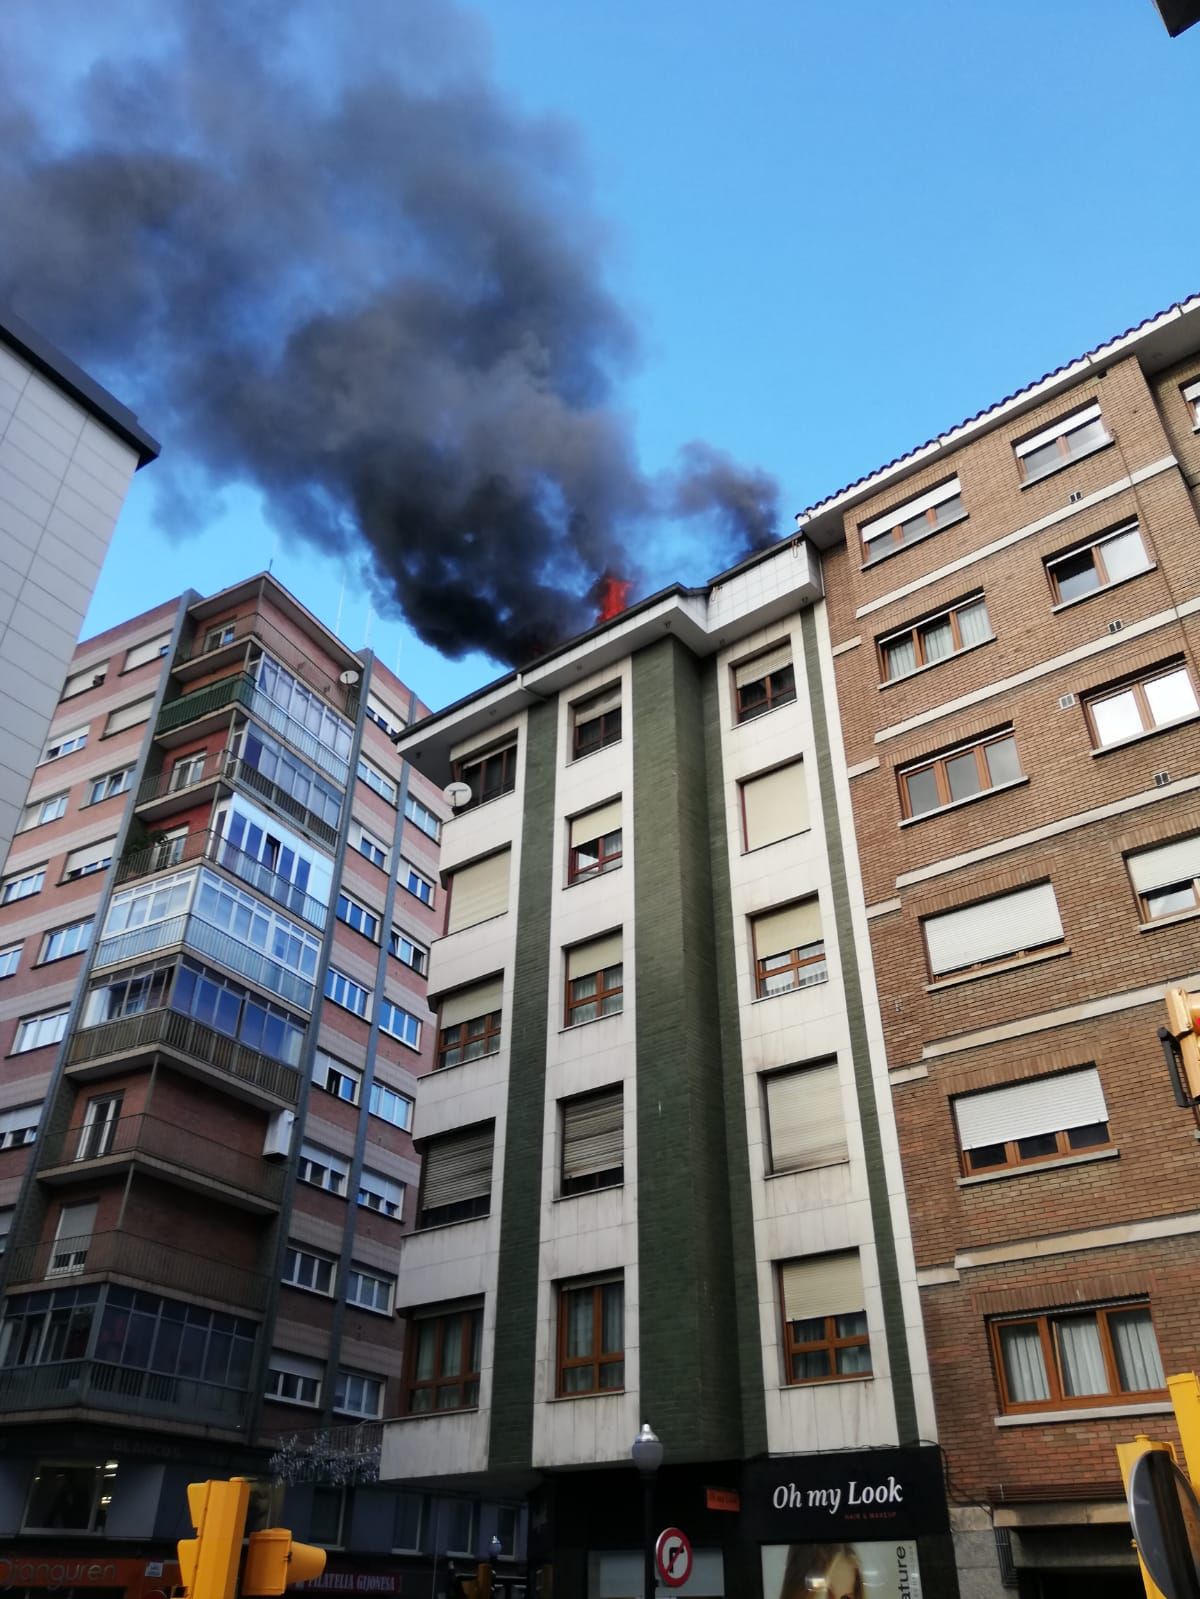 Espectacular incendio de un ático en Gijón